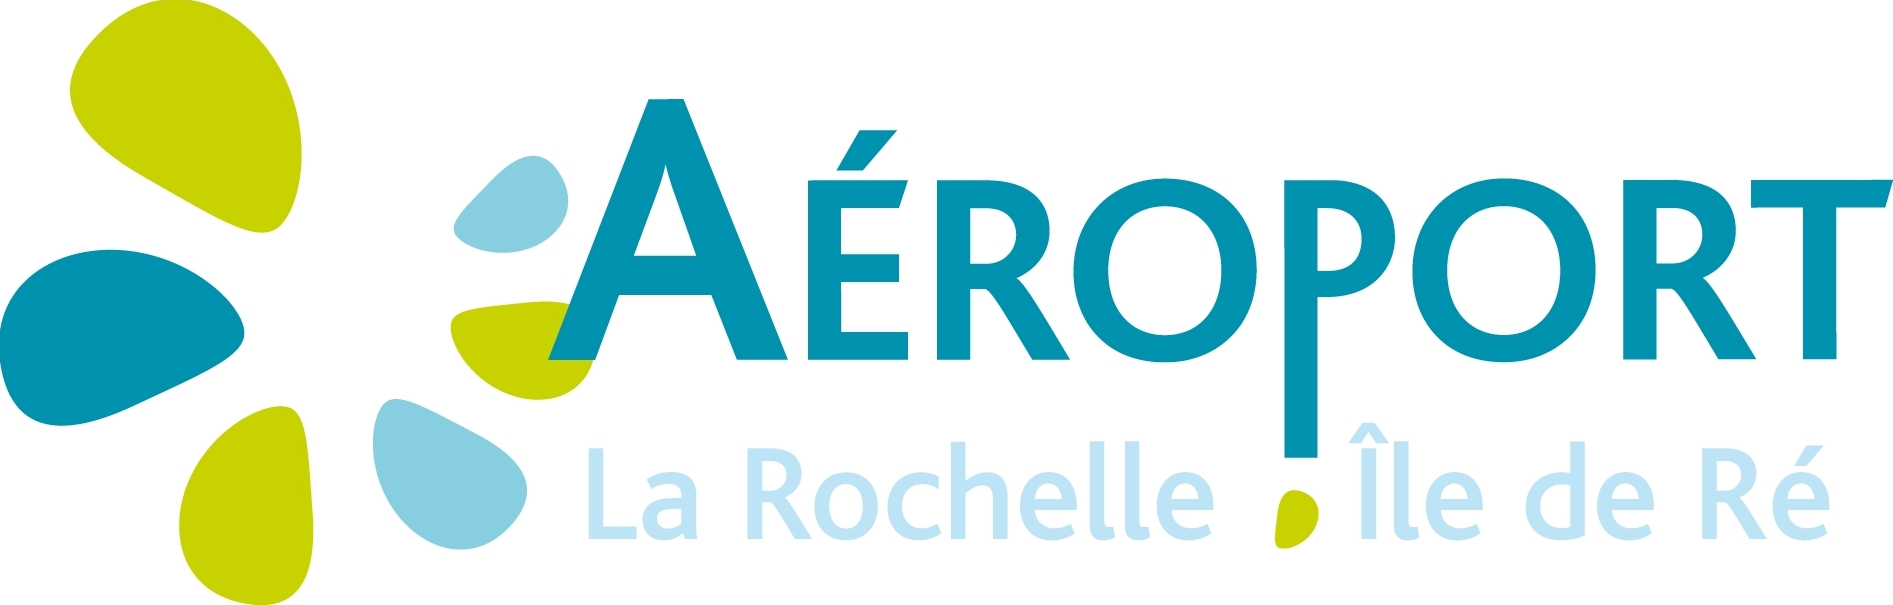 Horaires de vols de l'Aéroport de La Rochelle